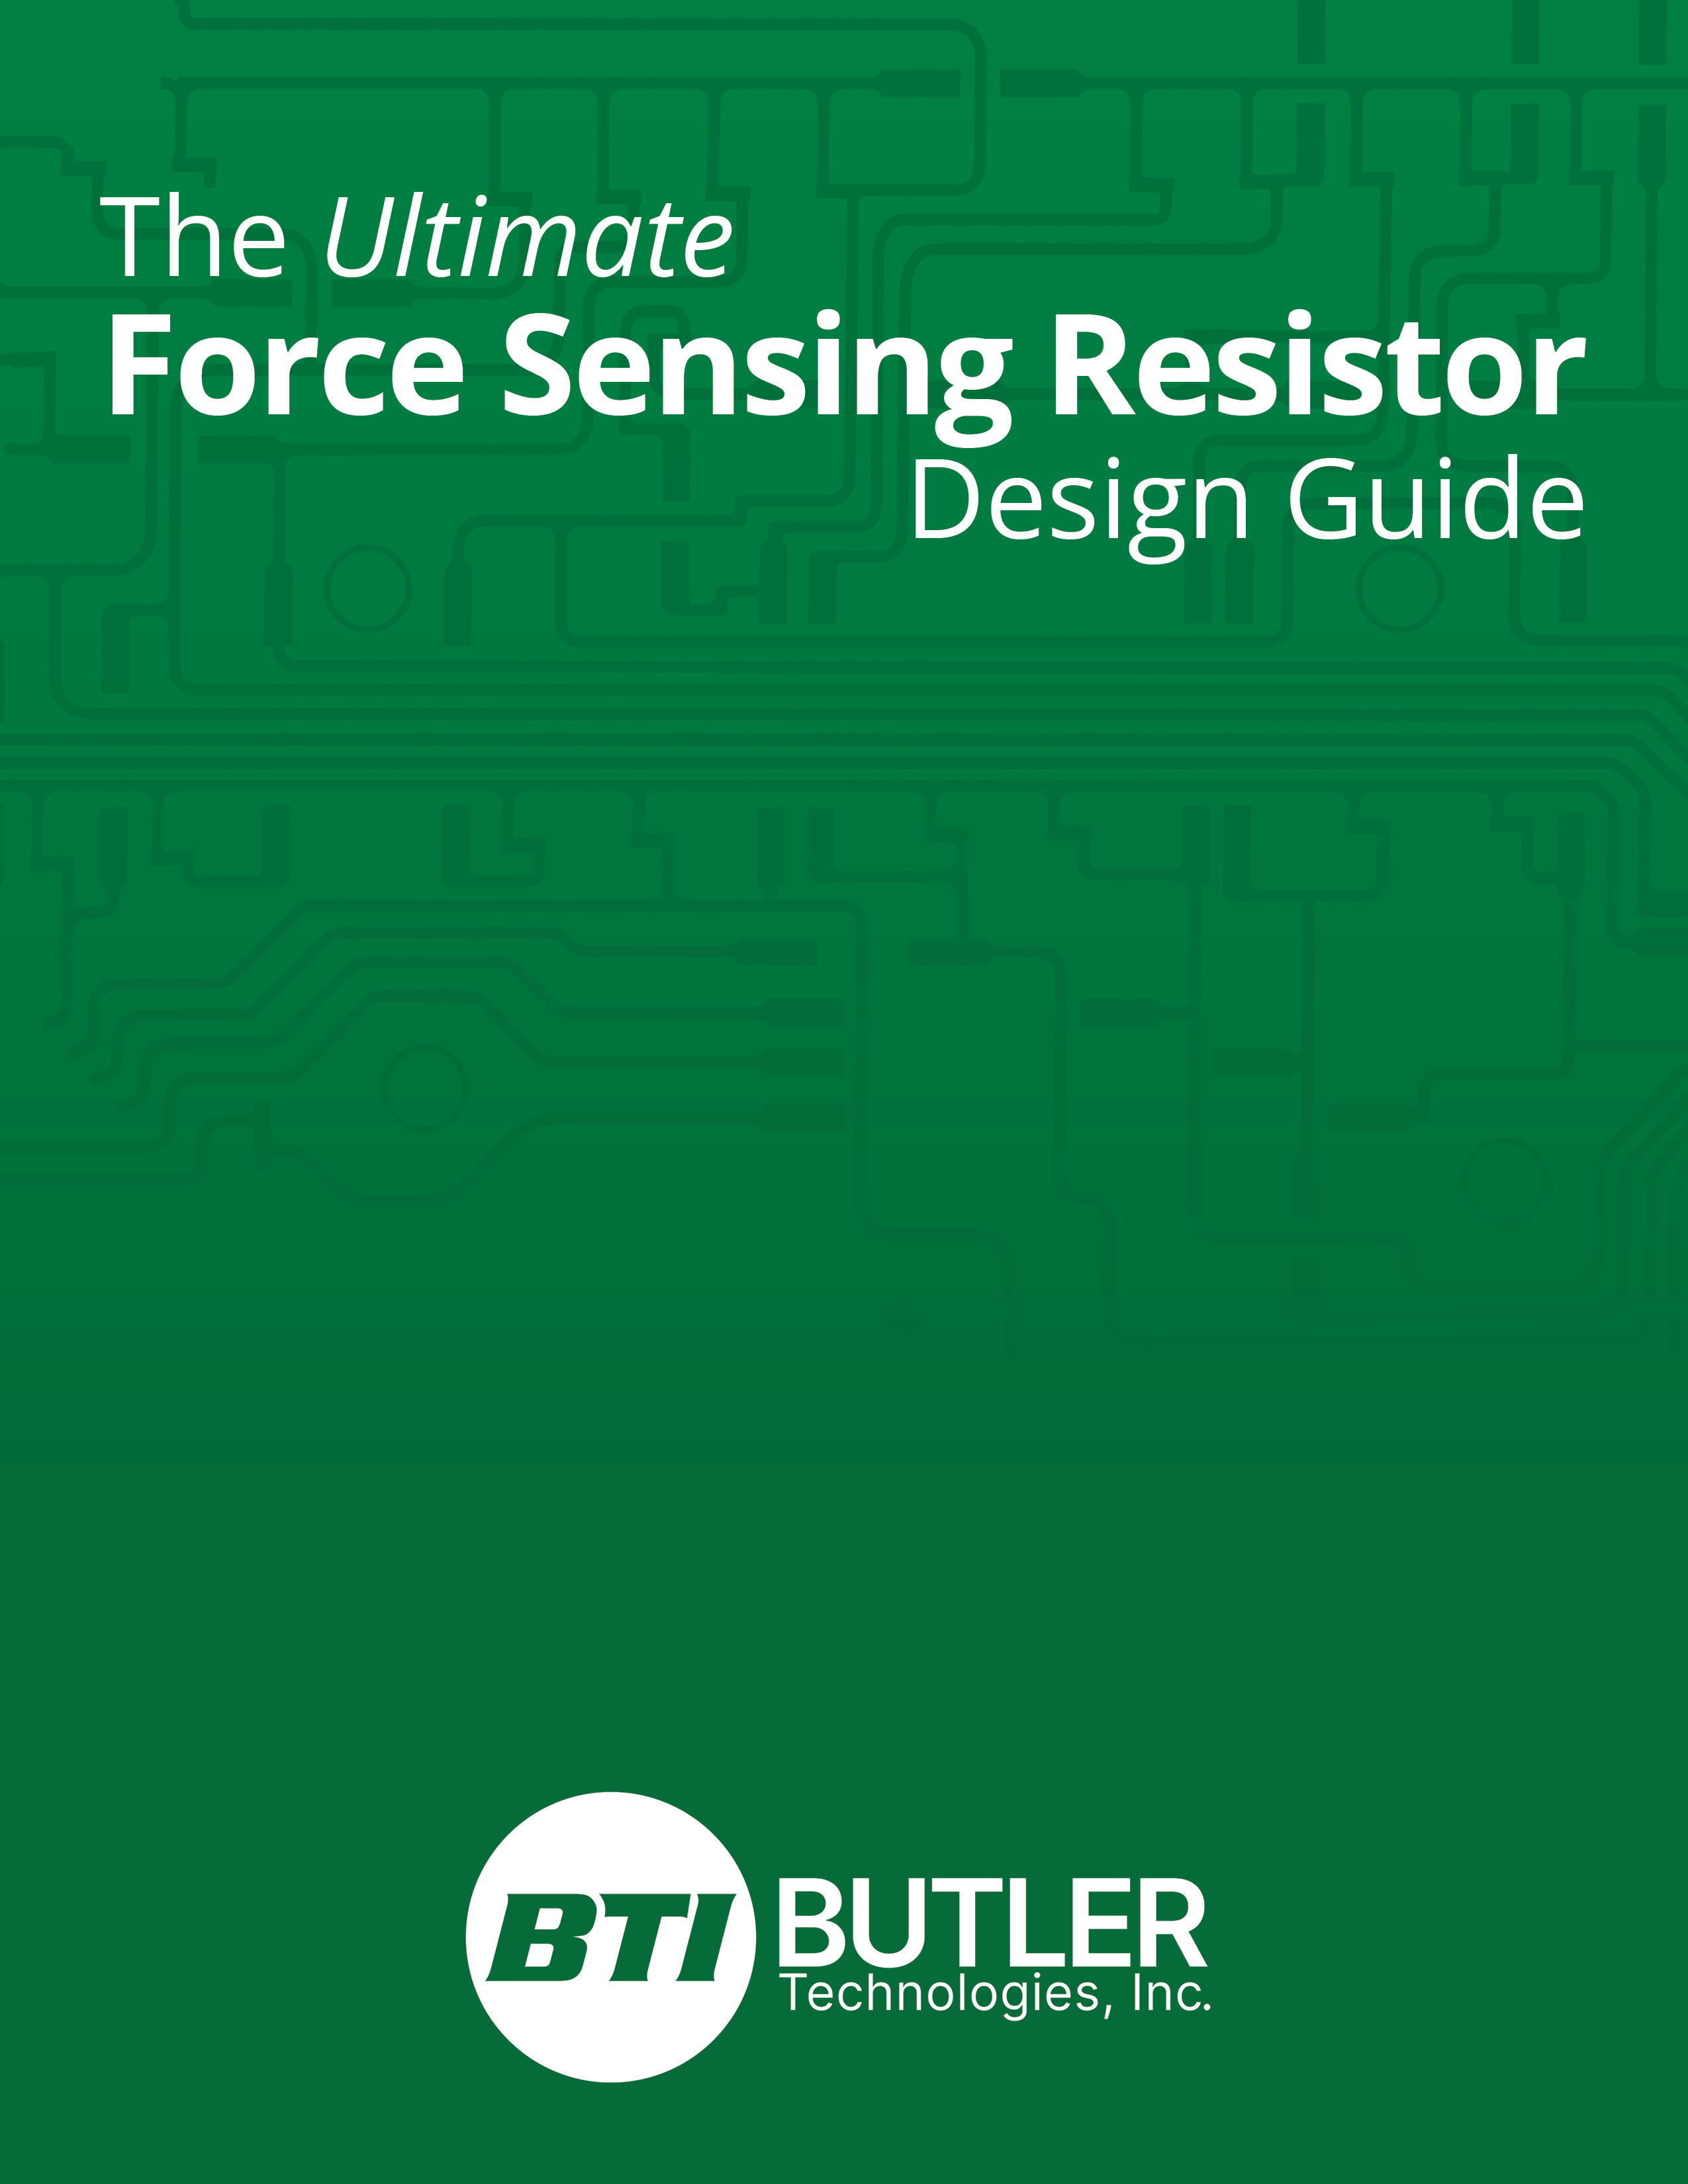 FSR Design Guide Image